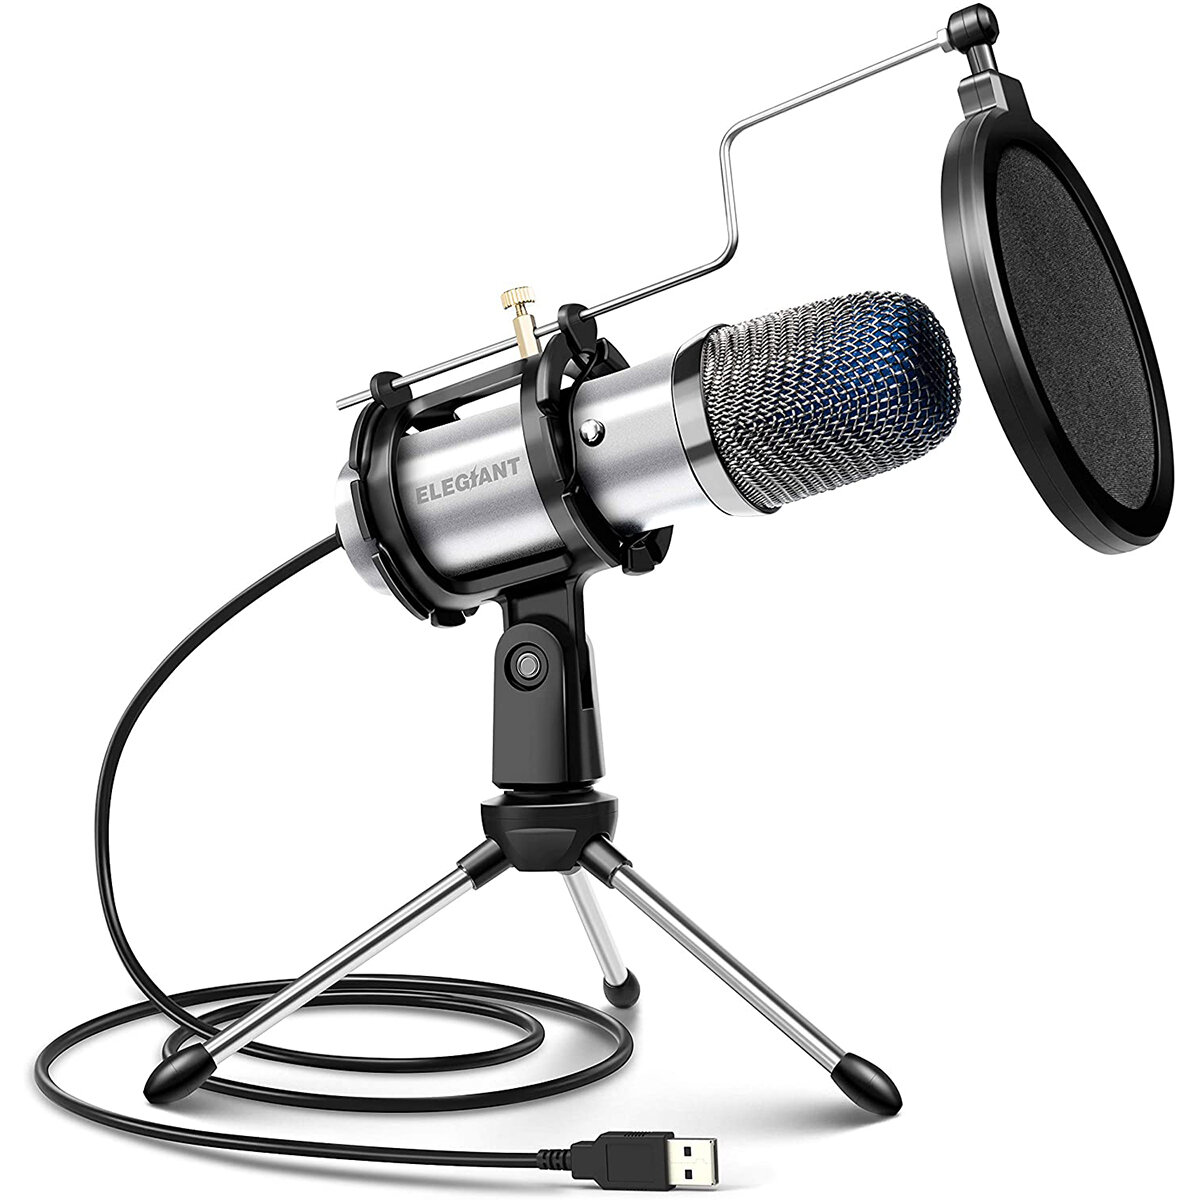 Mikrofon ELEGIANT EGM-04 z Polski za $14.99 / ~61zł